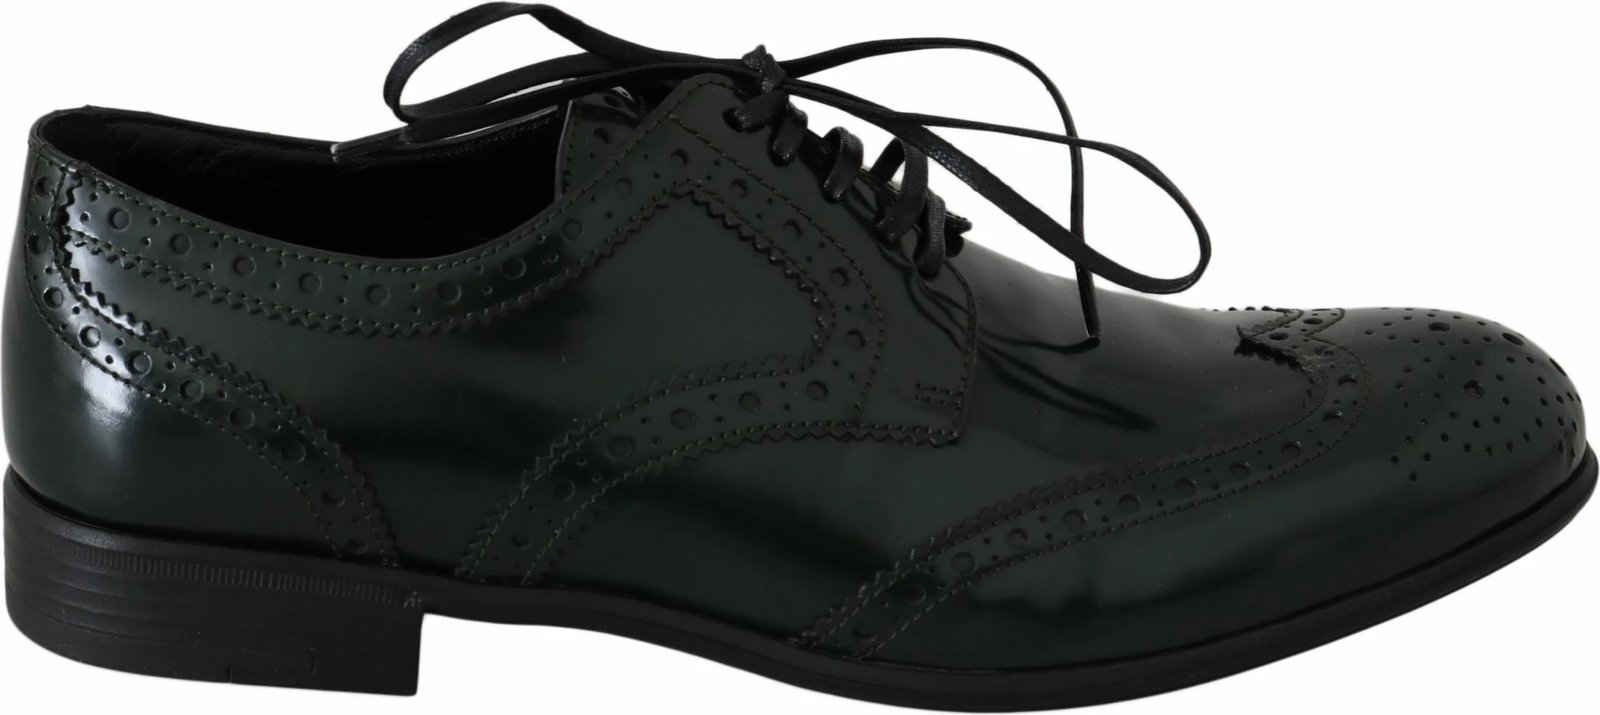 Këpucë për meshkuj Dolce & Gabbana, të gjelbërta